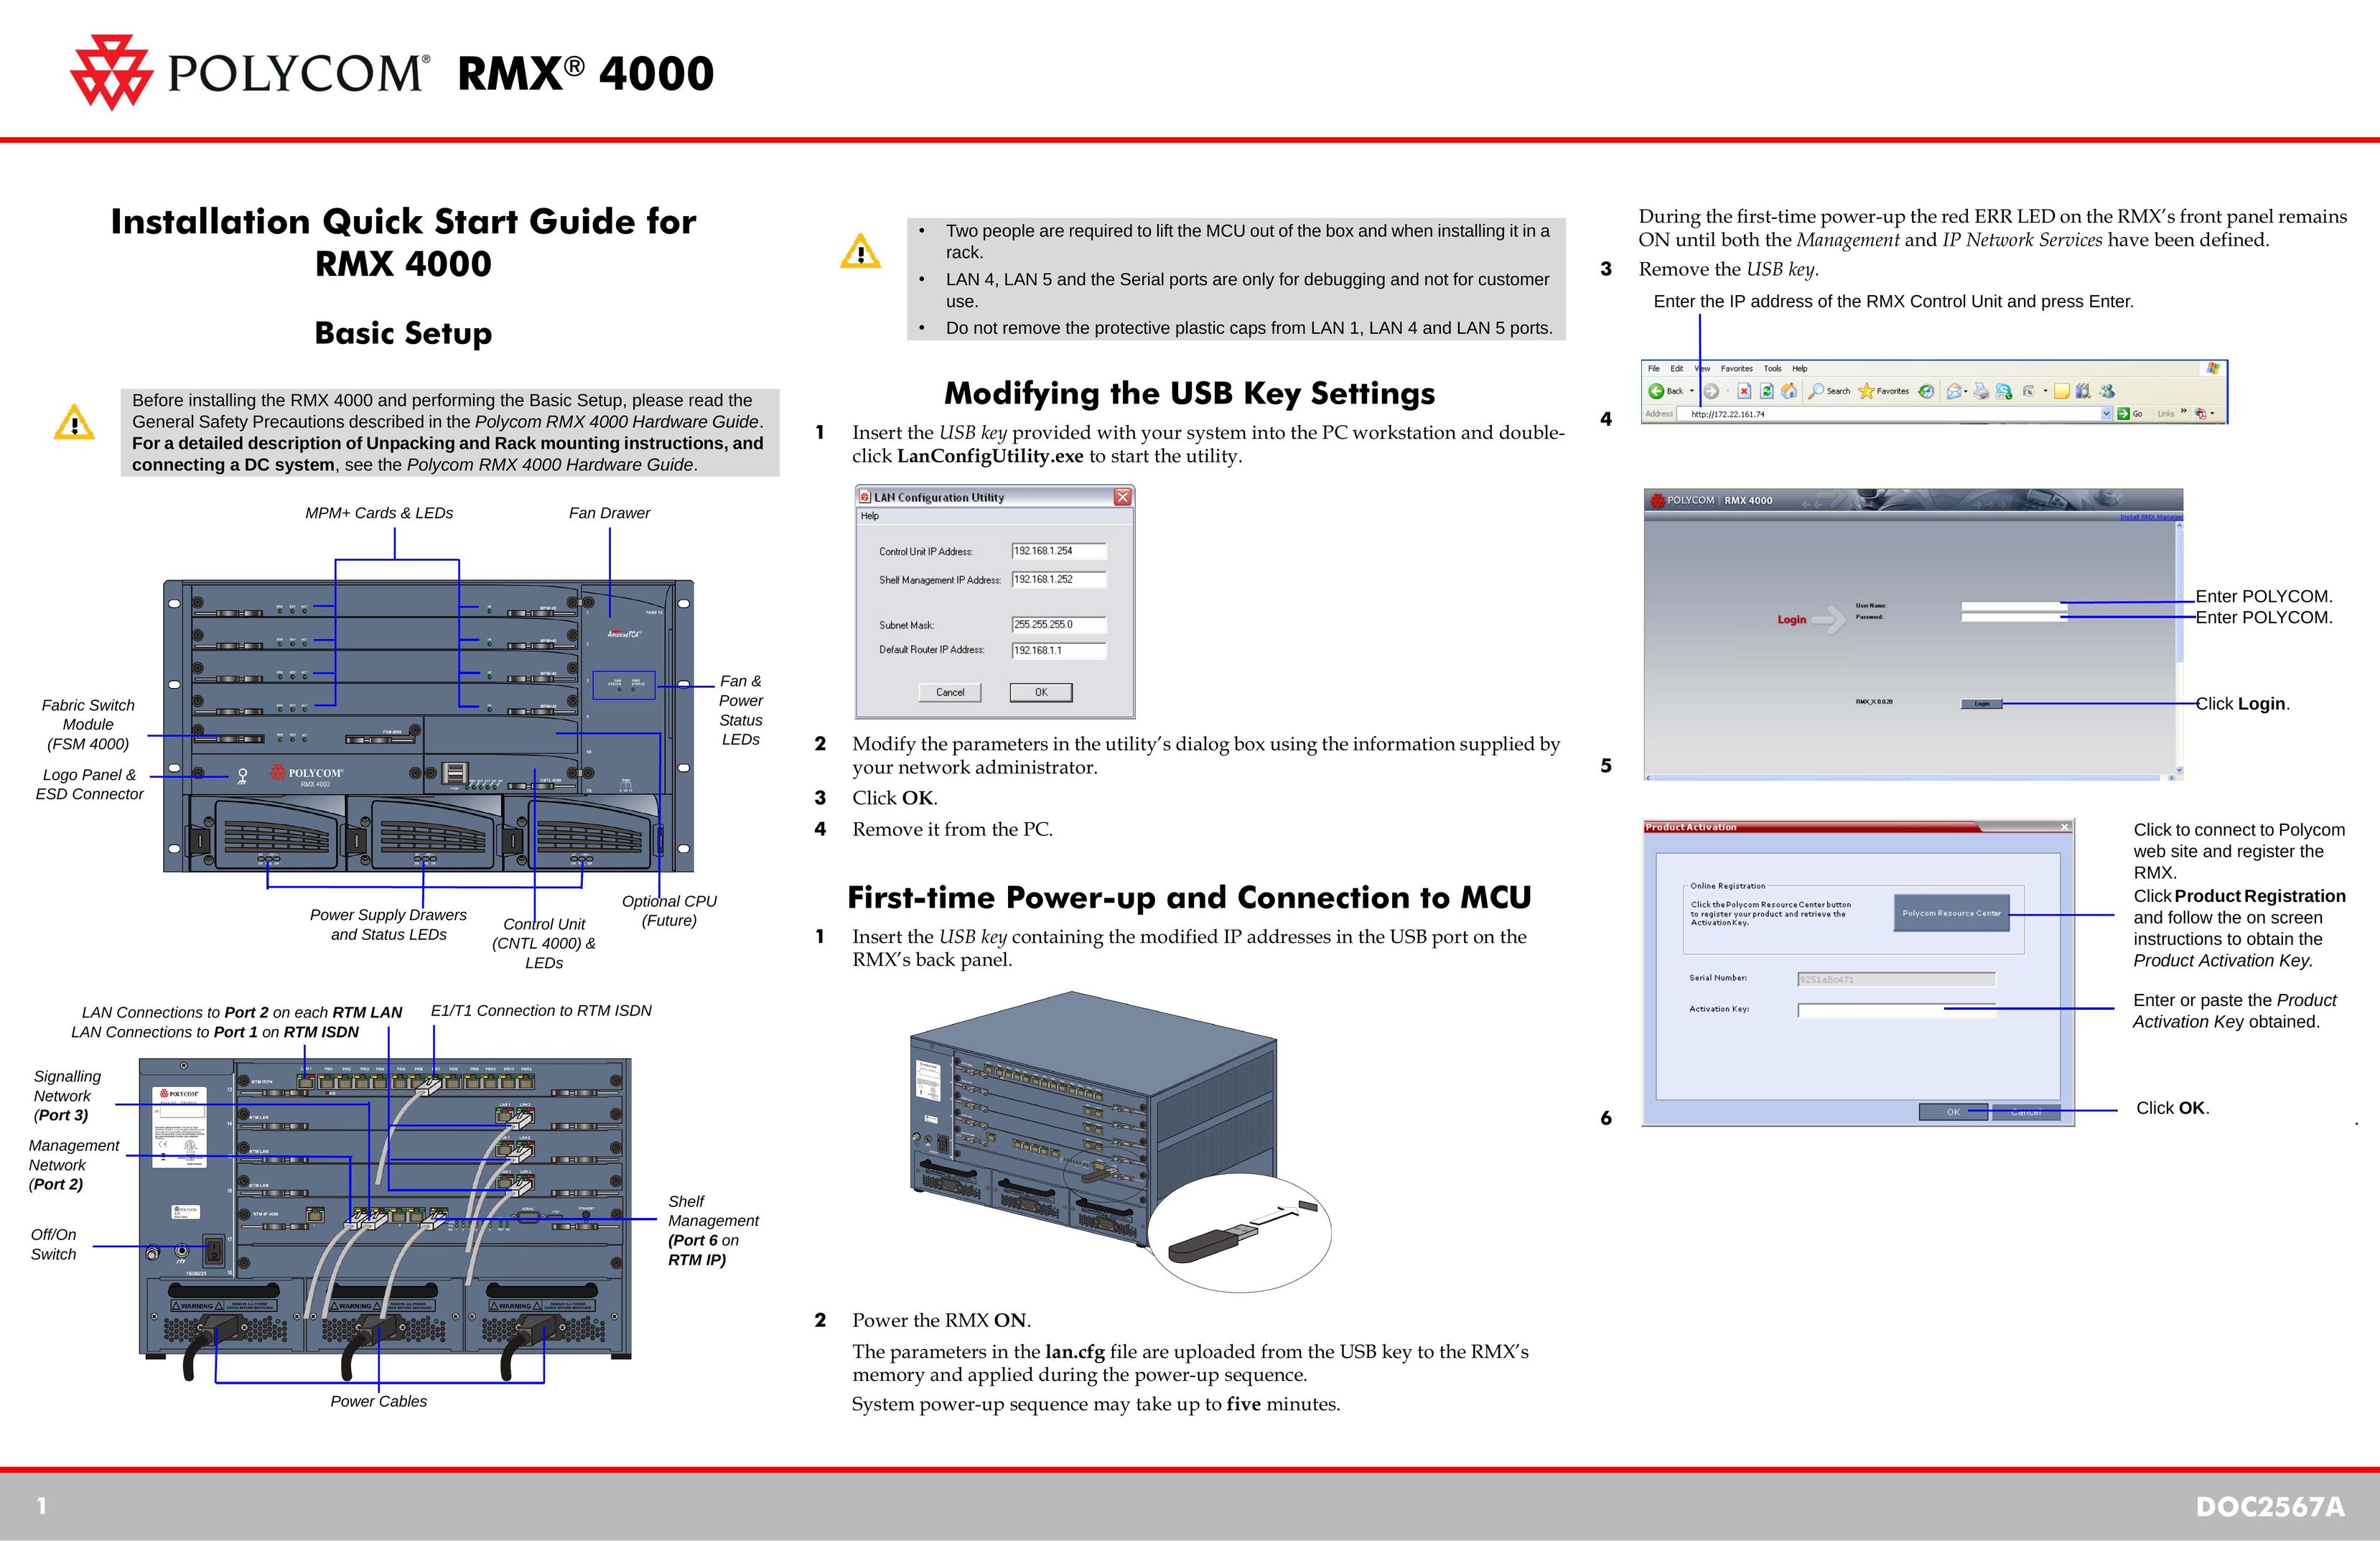 Polycom DOC2567A Server User Manual